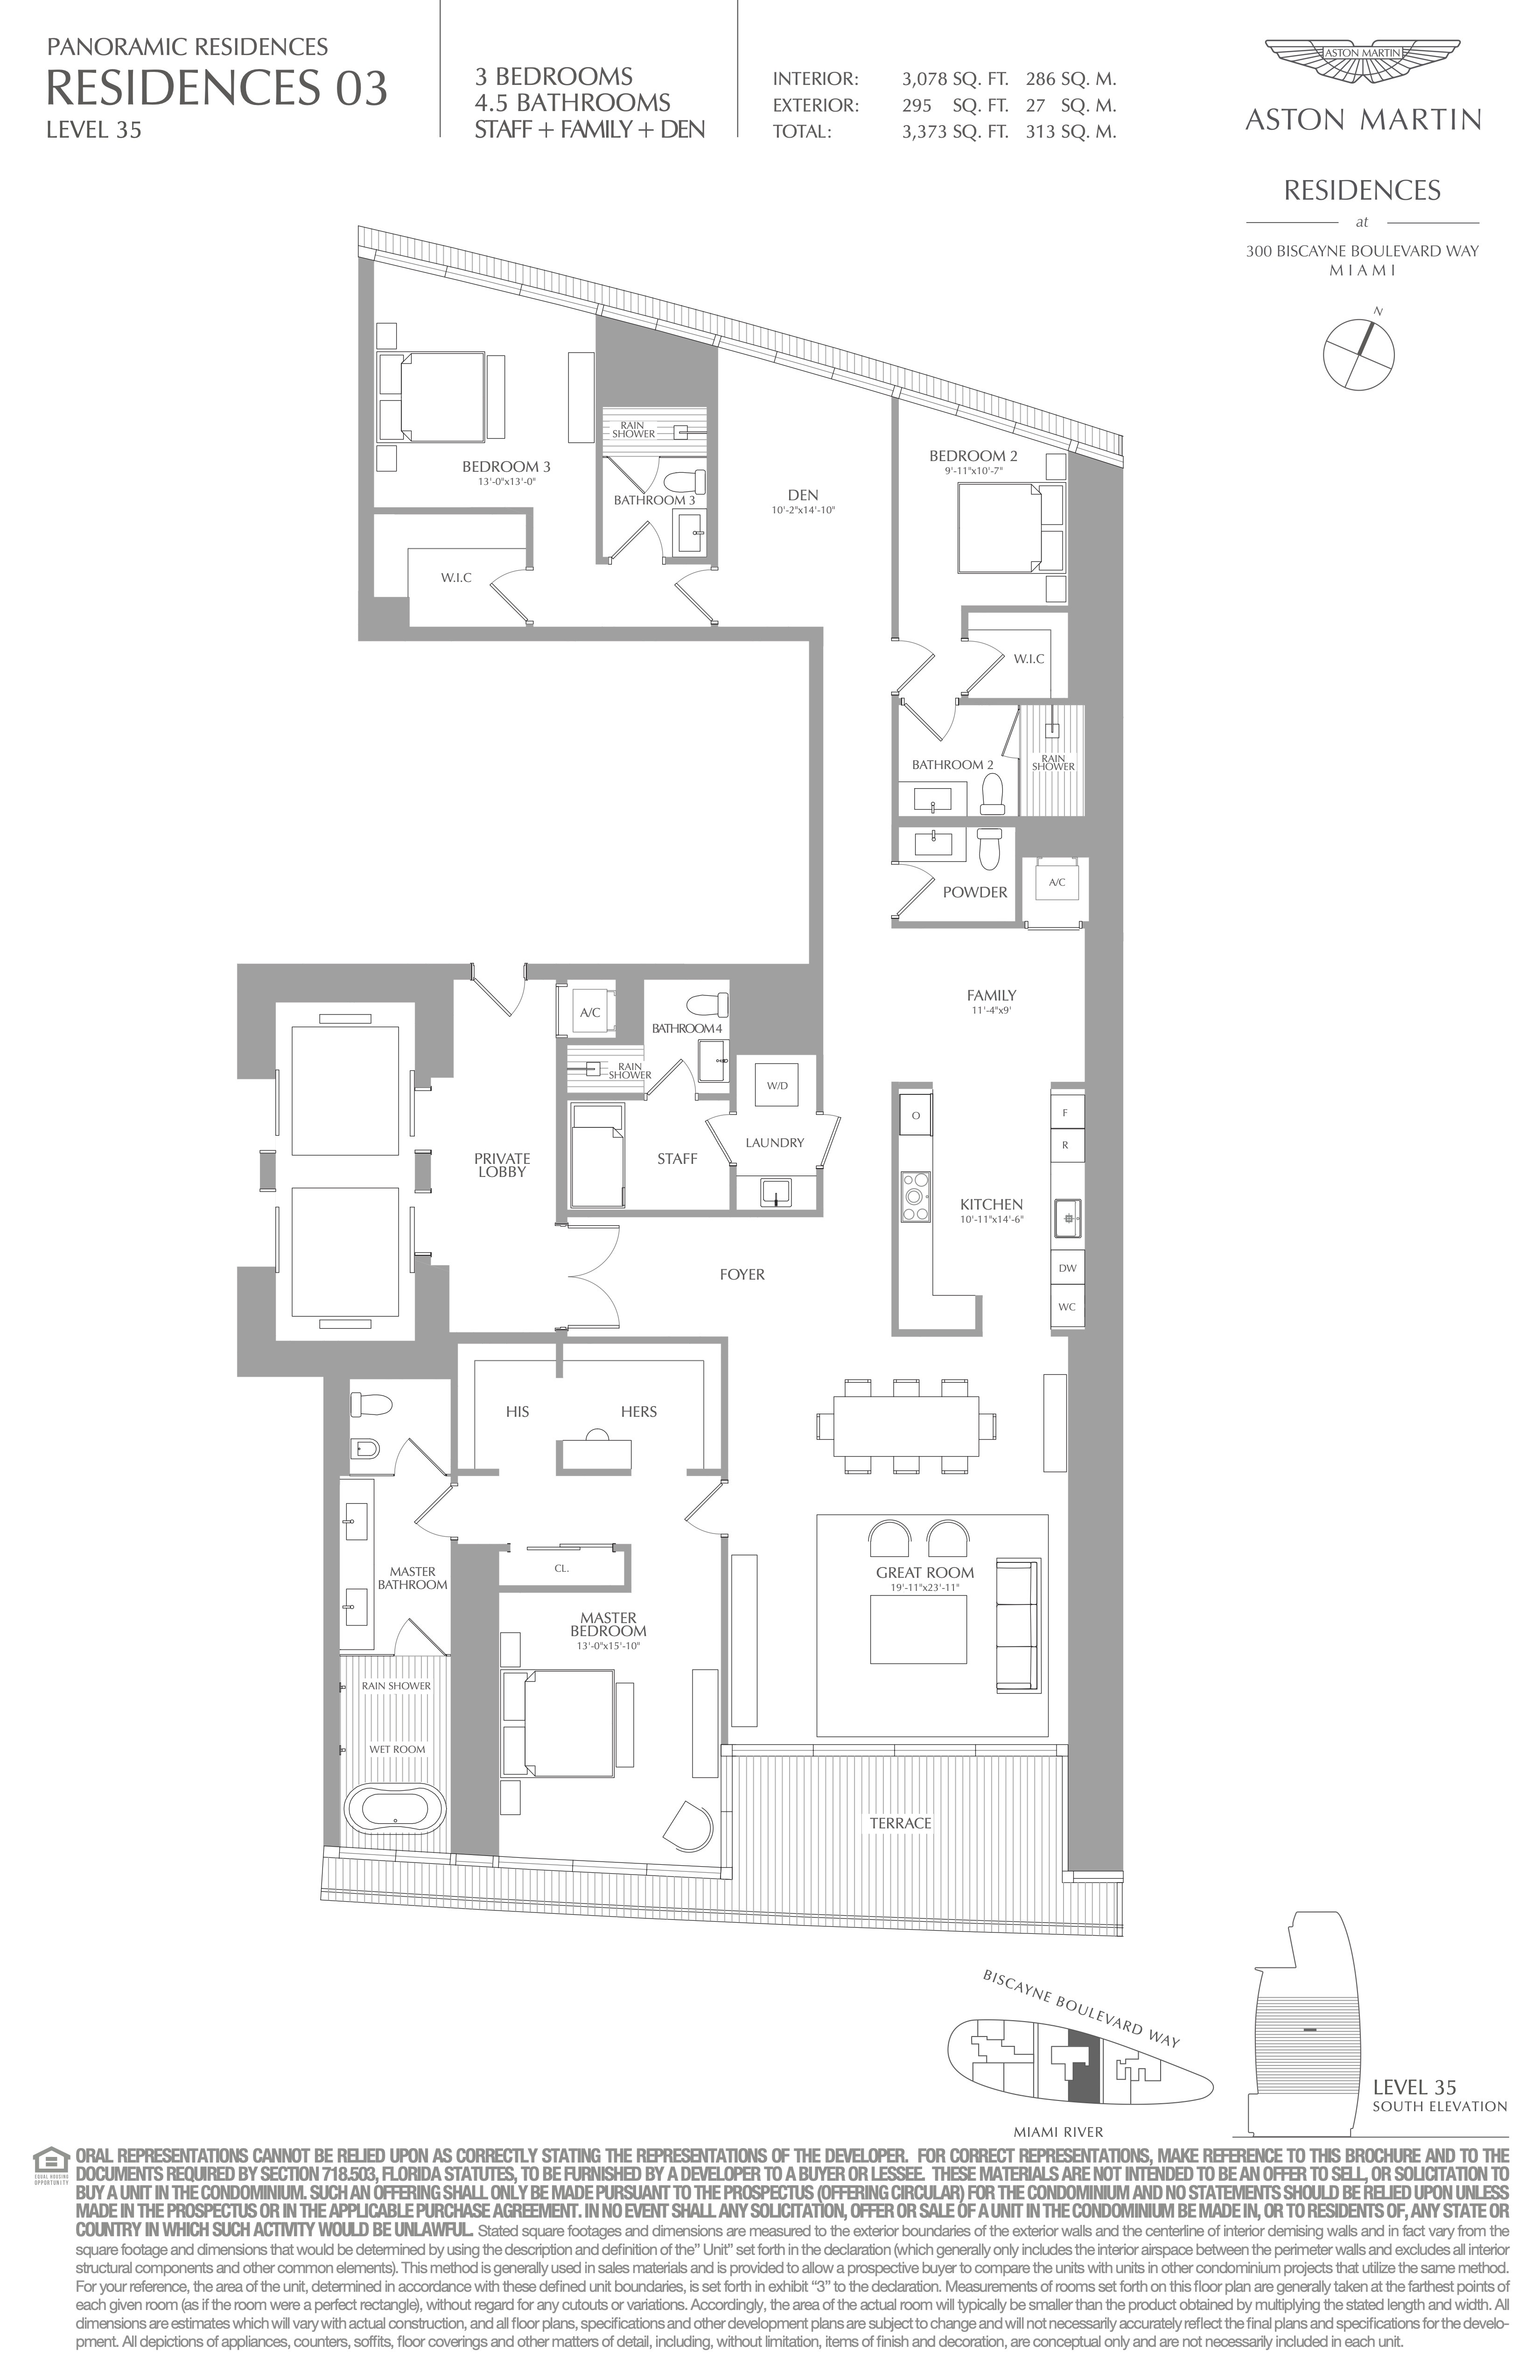 Floor Plan for Aston Martin Residences Floorplans, Residence 03